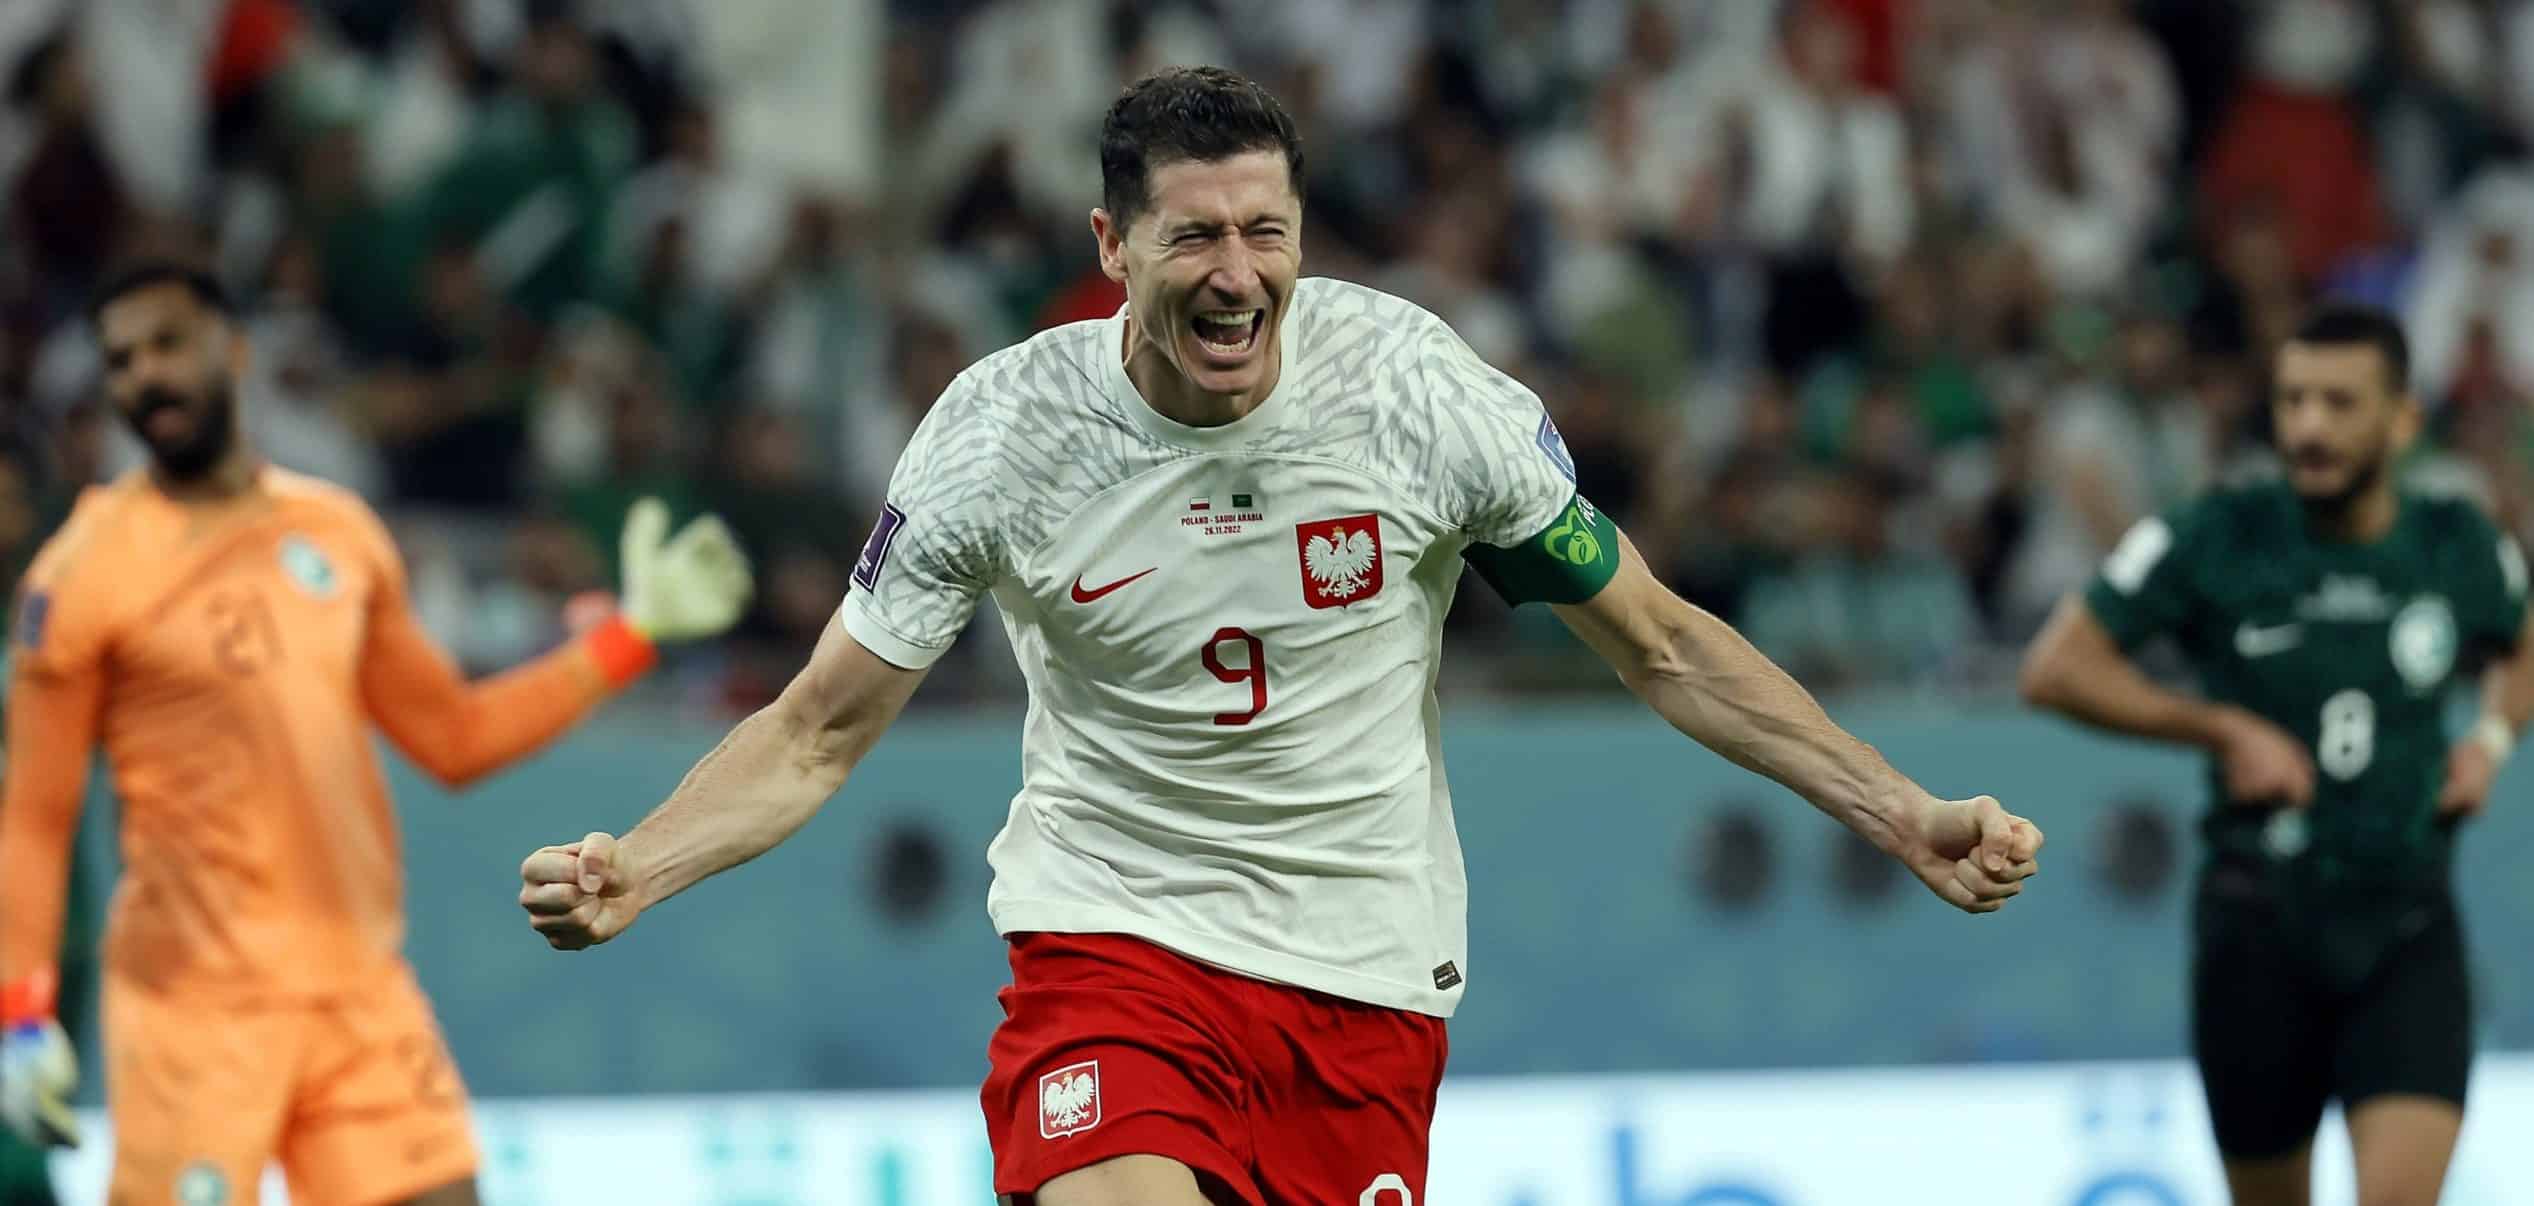 Mistrzostwa Świata Dzień 7: Lewandowski prowadzi Polskę do zwycięstwa nad potężnymi Saudyjczykami